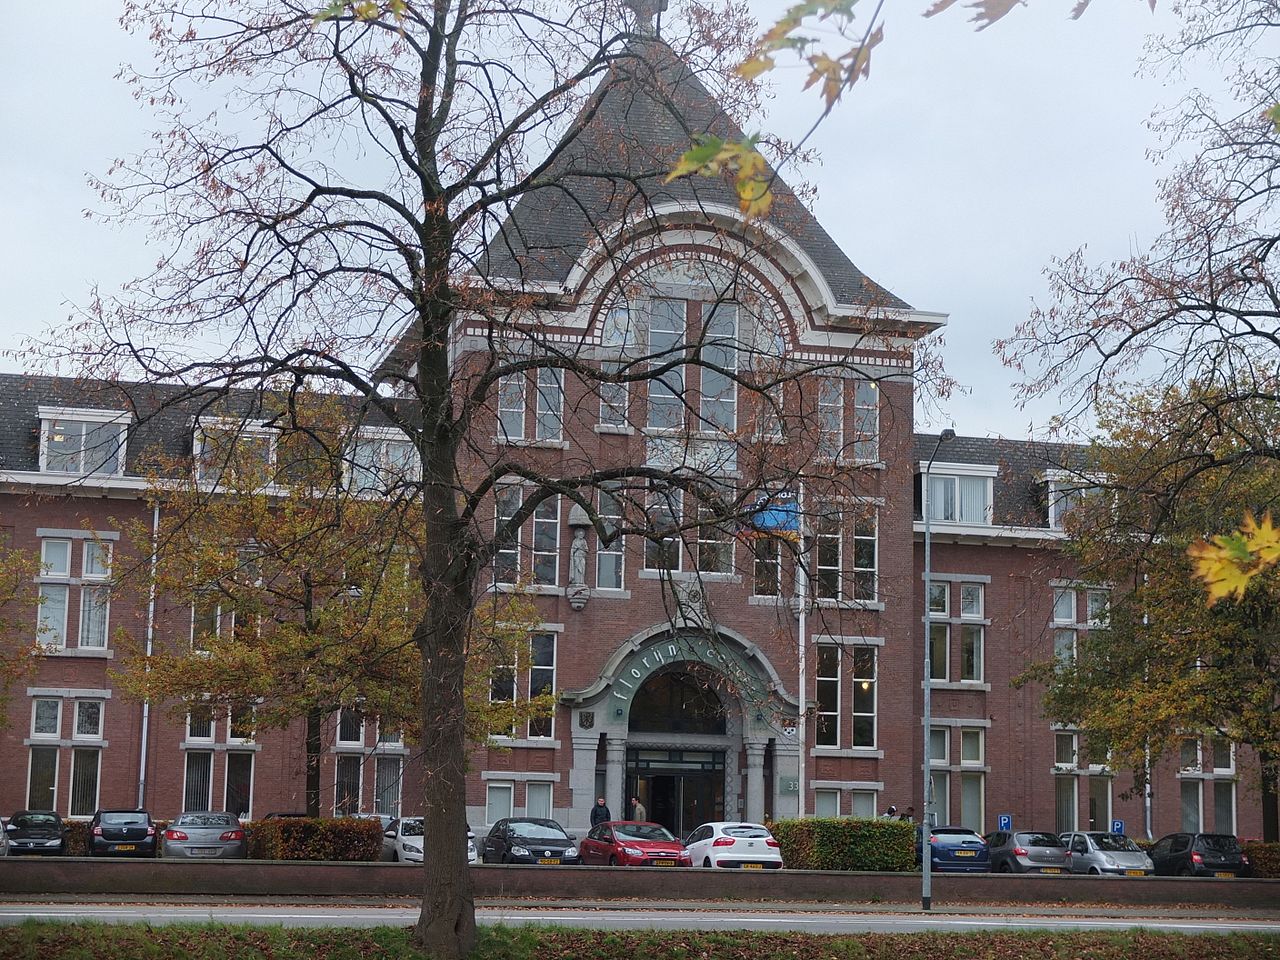 File:Florijn College DSCF0497.JPG - Wikimedia Commons